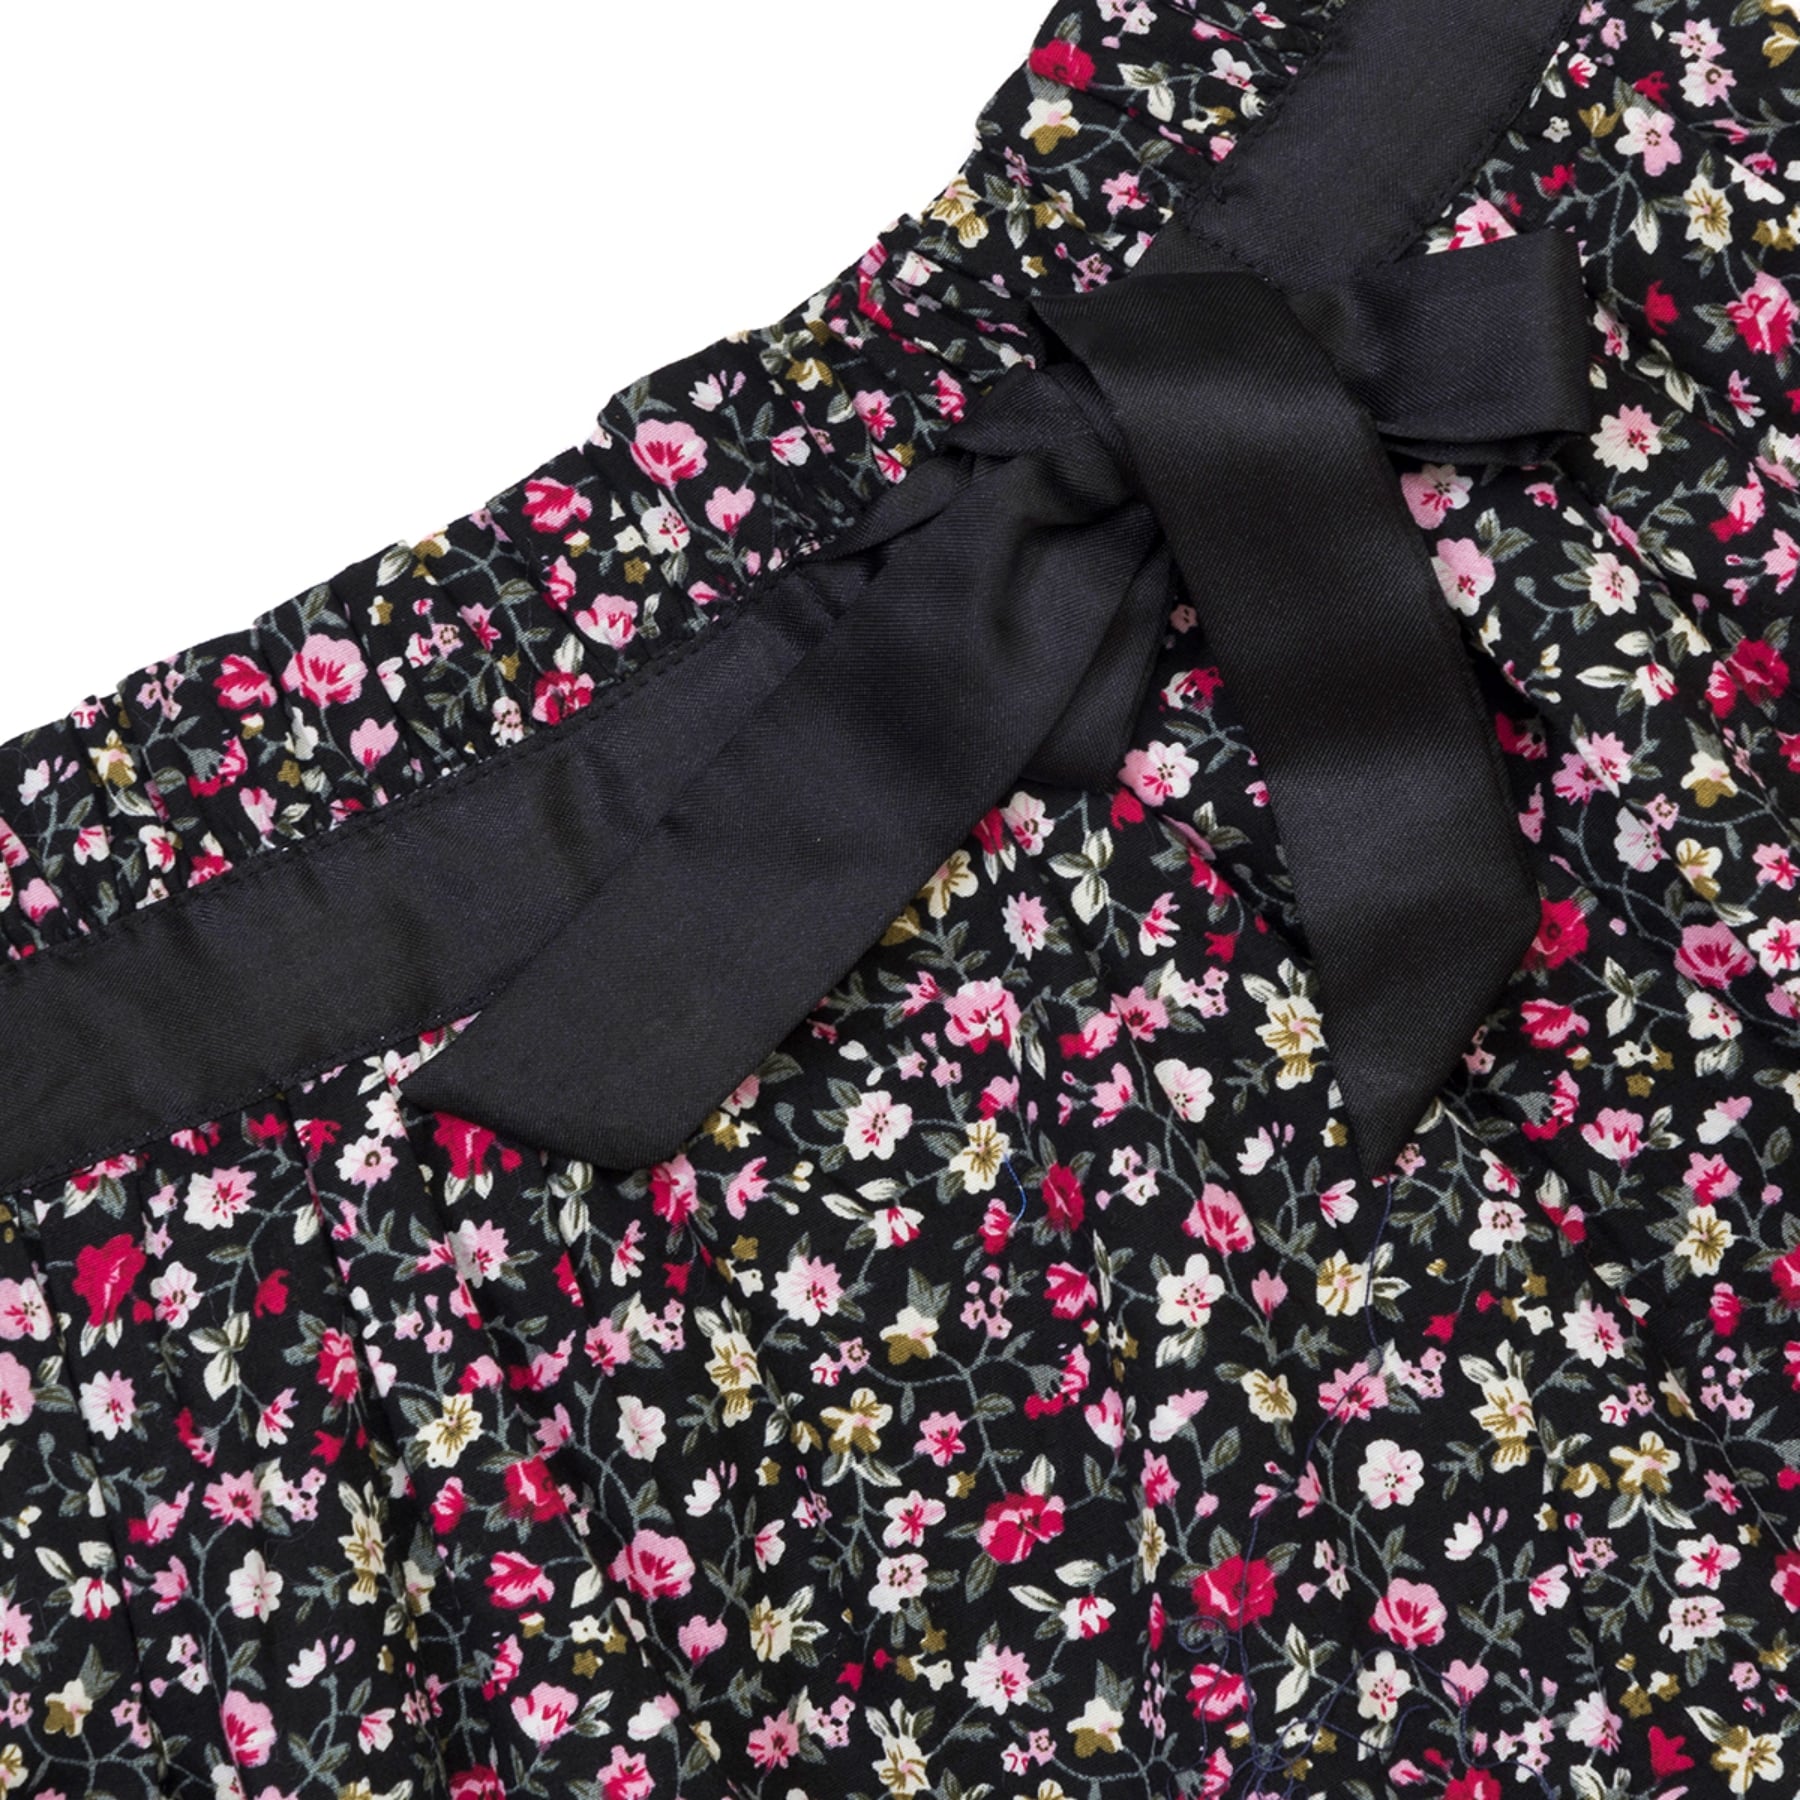 jolie jupe fleurie noir et rose pour filles avec taille élastique et ruban de satin noir. Jupe chic et confortable pour filles et fillettes de la marque de mode pour enfant la faute a voltaire